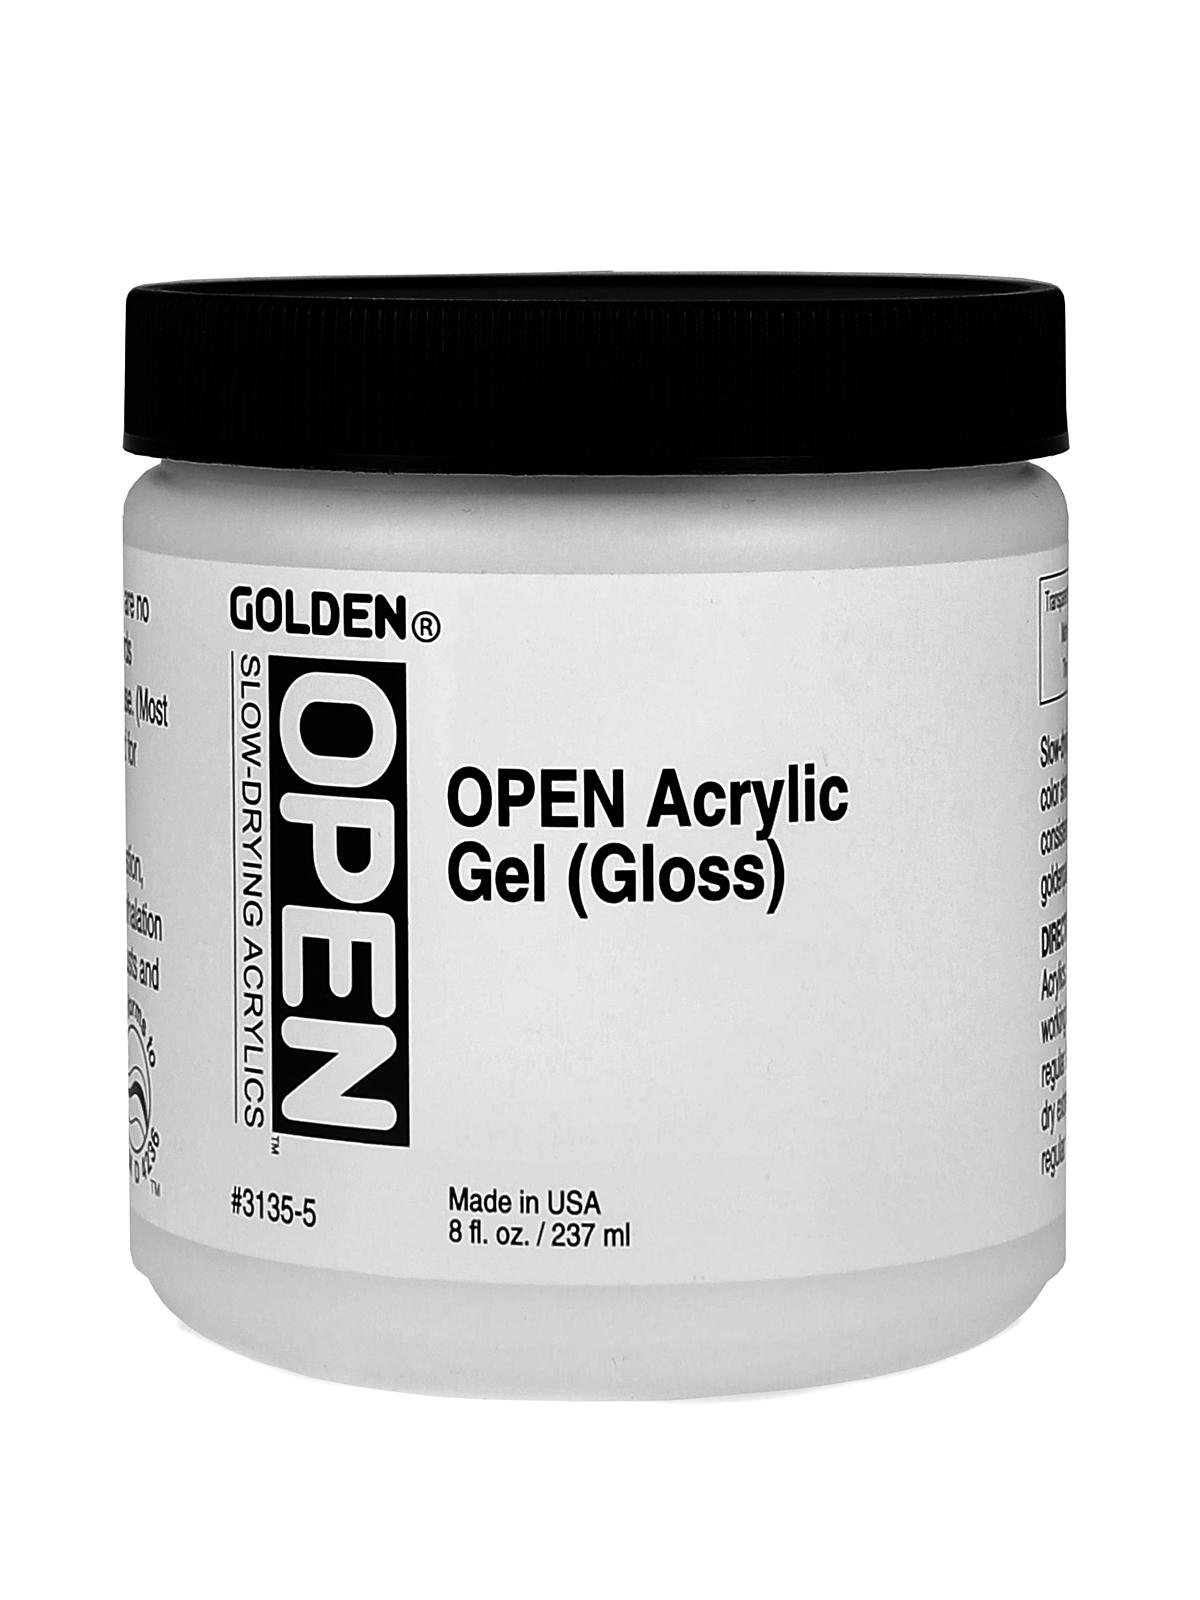 Golden OPEN Acrylic Gel Medium Gloss Pint